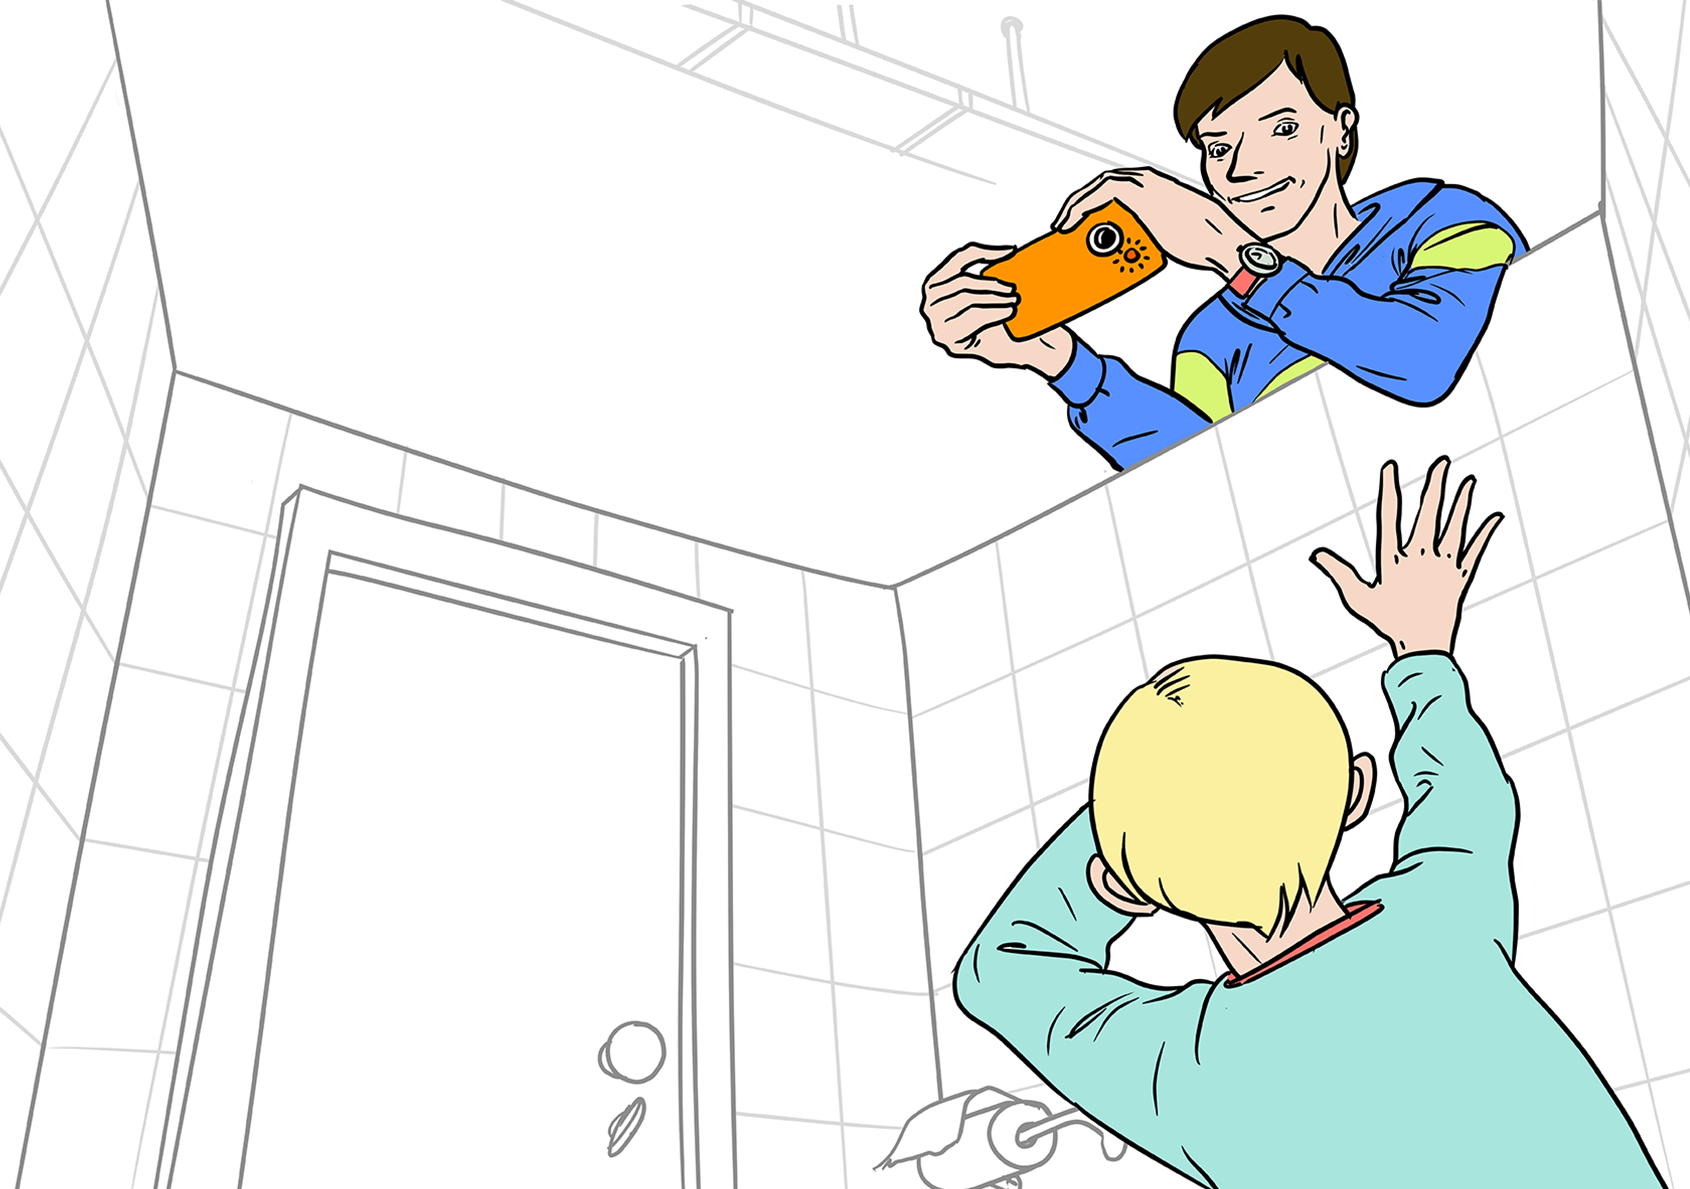 Illustration: Ein Schüler (Eric, 16 Jahre) schaut über die Trennwand einer Toilette und filmt mit seinem Smartphone einen Jungen (den Fünftklässler Finn), der sich gerade in der Toilettenkabine befindet. Er hebt abwehrend die Hände. Eric grinst.